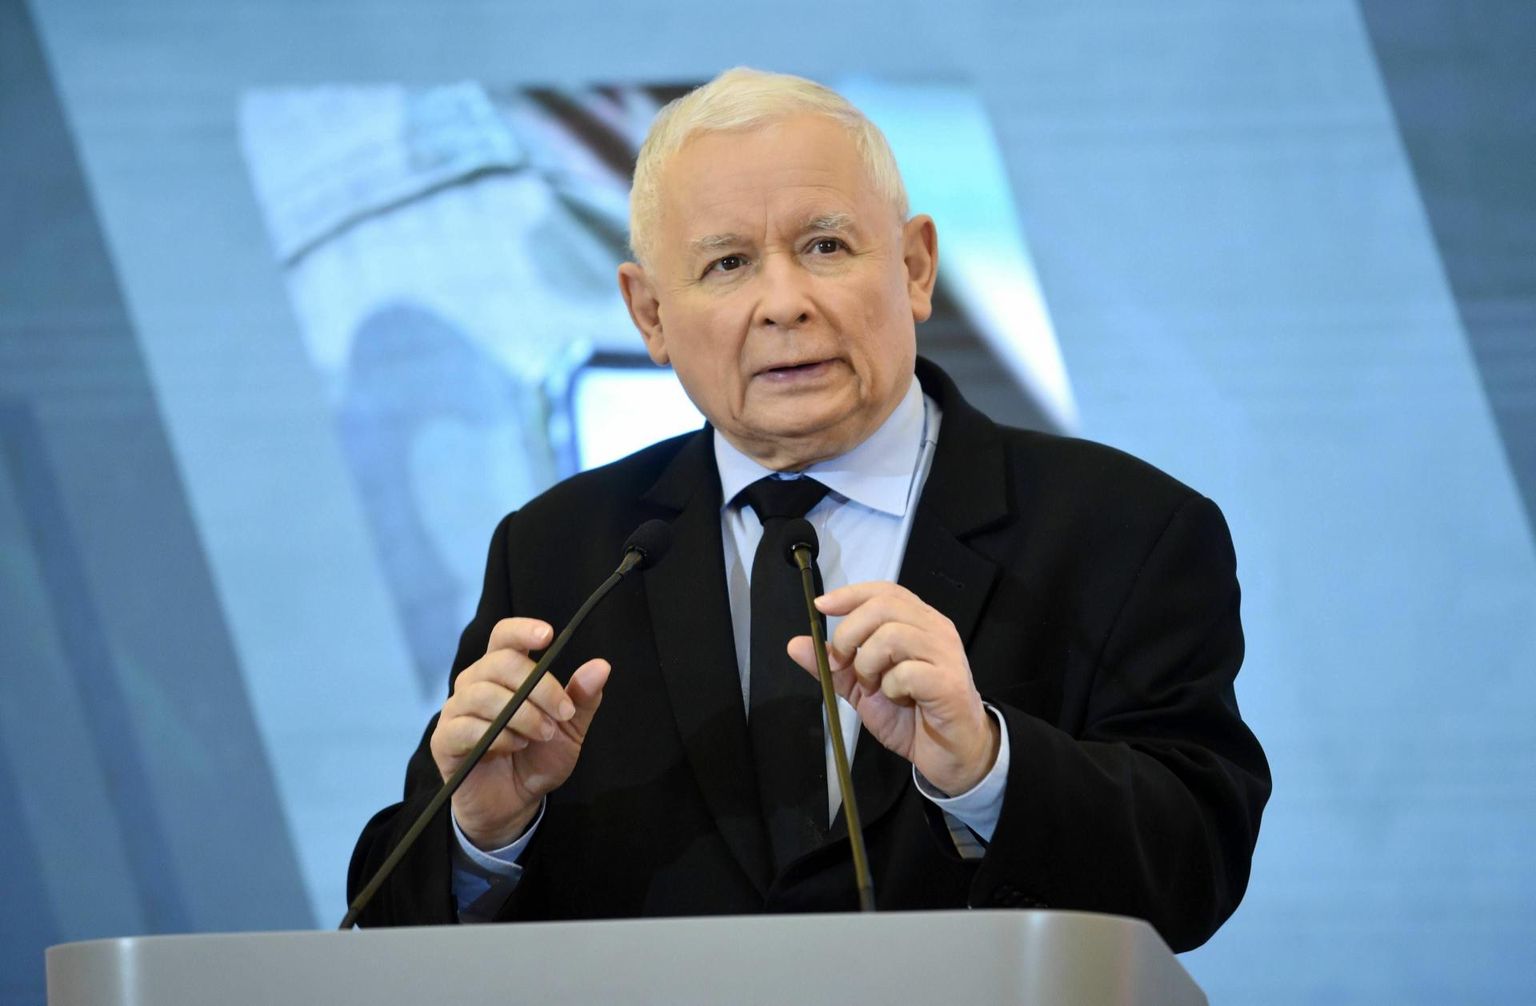 Poolas võimul oleva parempopulistliku Õiguse ja Õigluse (PiS) esimees Jarosław Kaczyński astus juunis tagasi asepeaministri kohalt, et keskenduda erakonna asjadele. Hoolimata sellest, et tal pole ametlikku positsiooni, peetakse teda Poola tegelikuks liidriks.